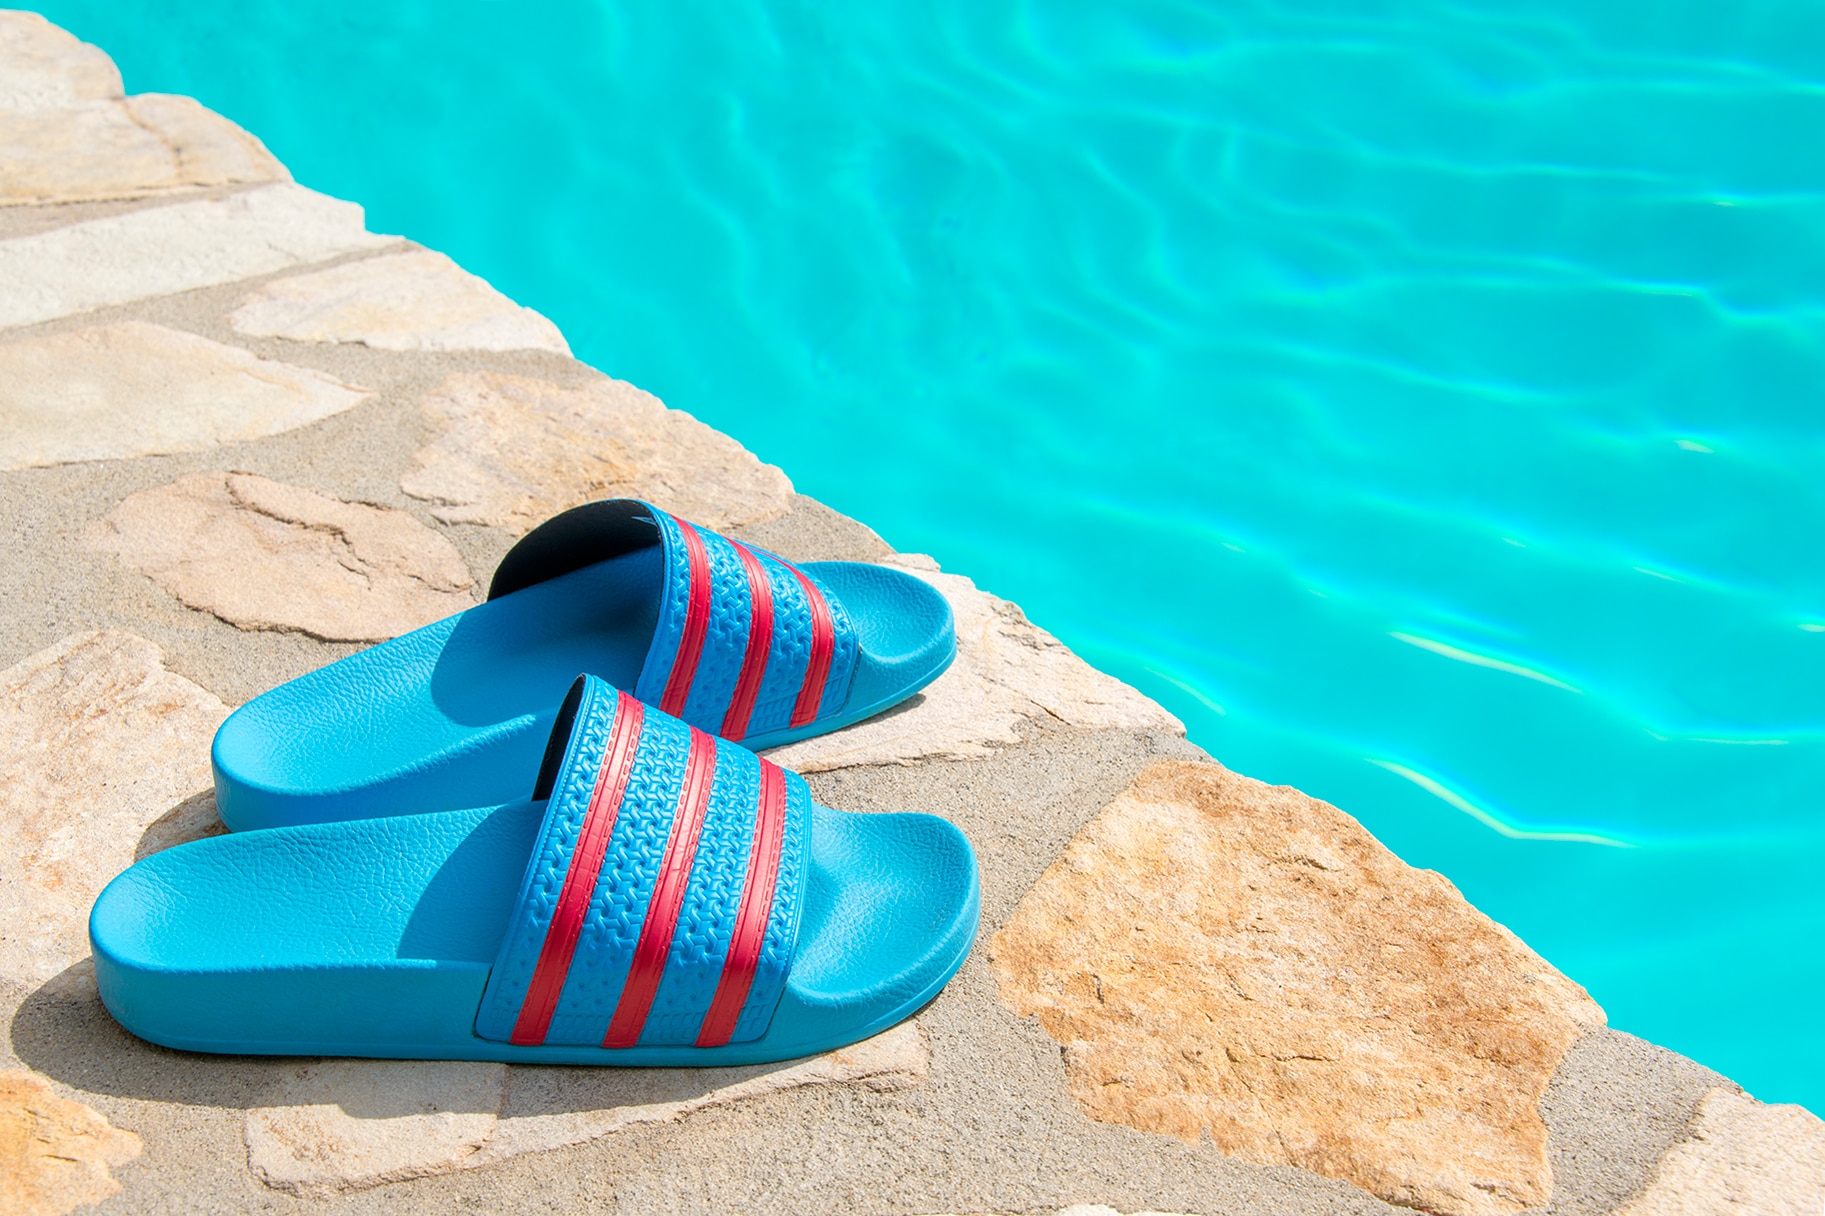 Stylish Pool Slide Sandals: Designer 